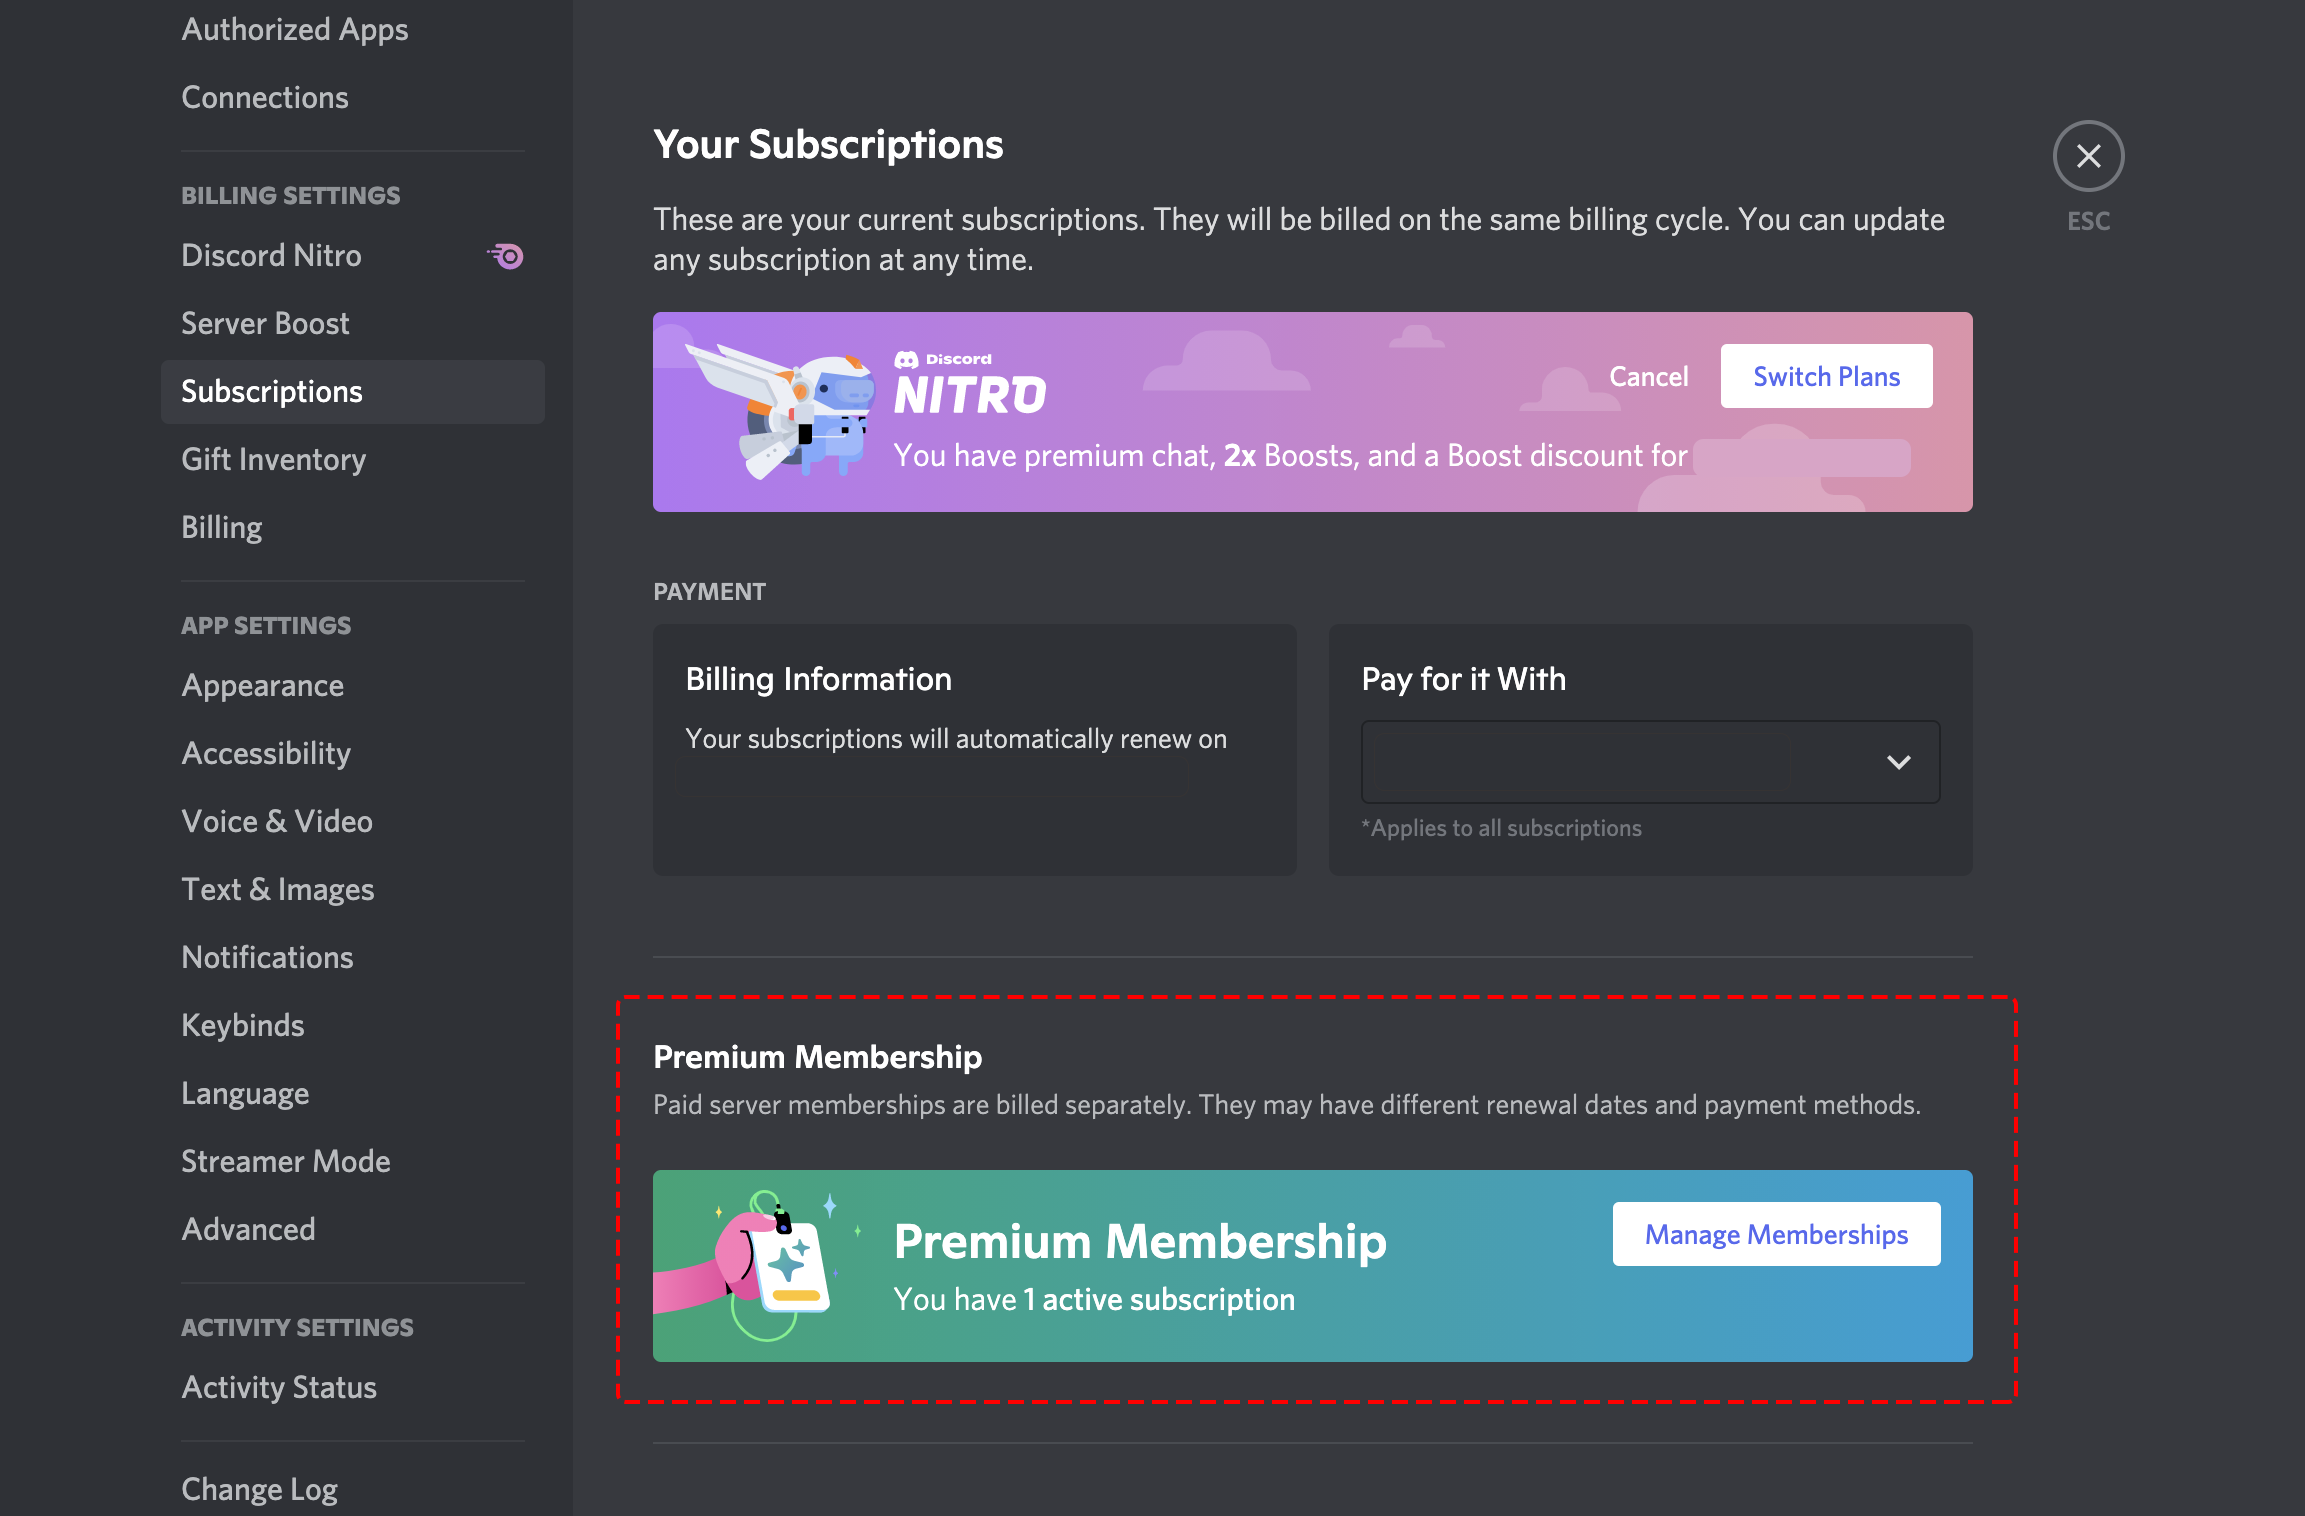 Premium-Membership-in-Subscription-tab.png